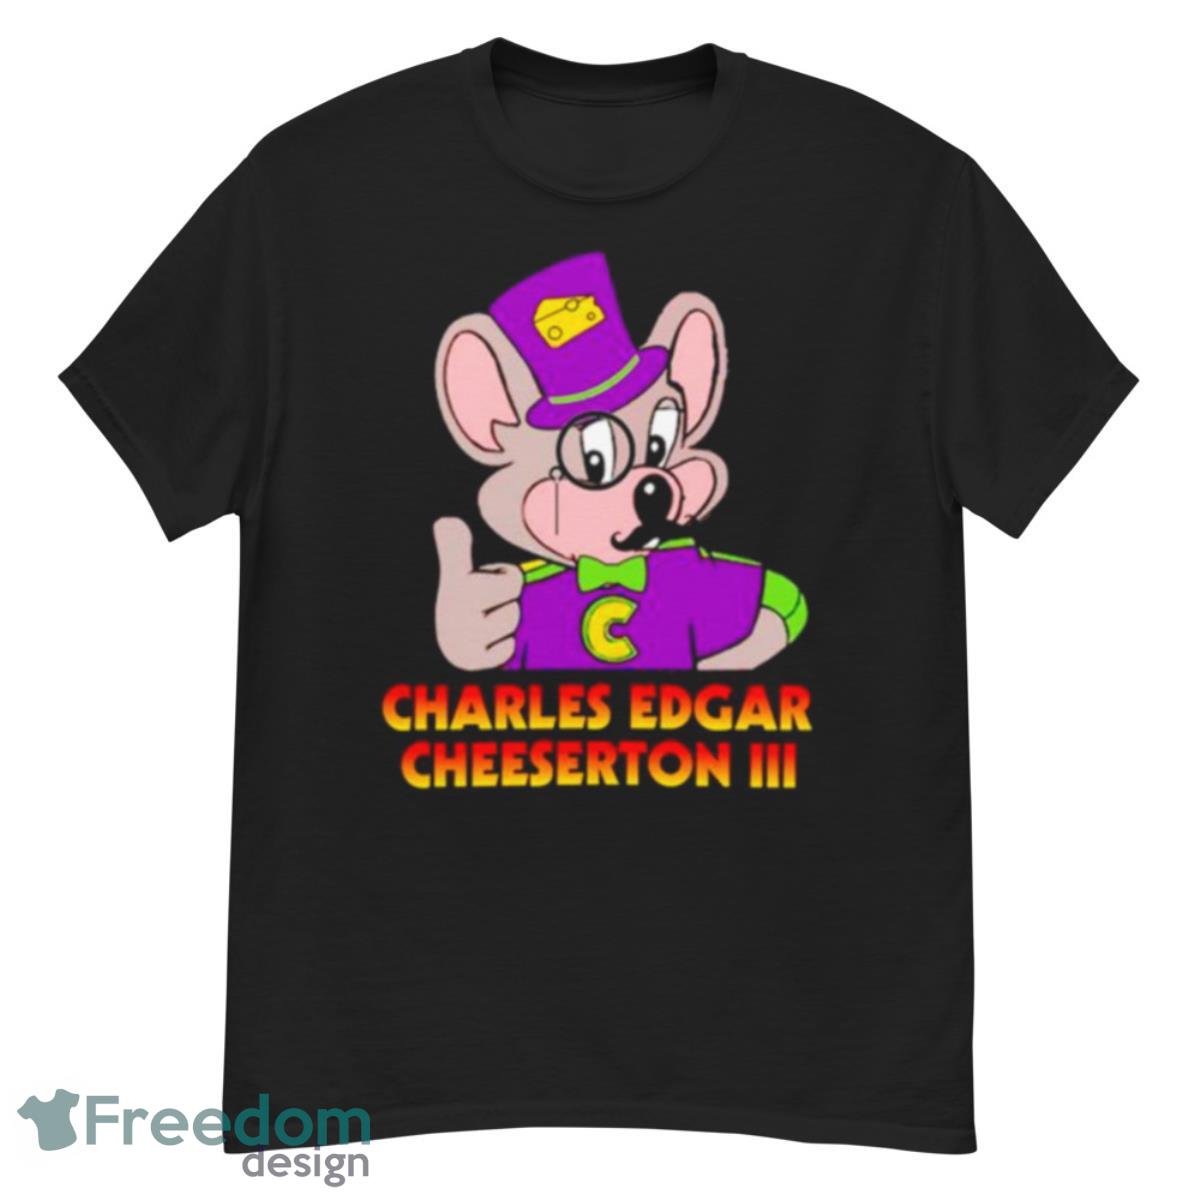 Ted Lasso Charles Edgar Cheeserton shirt - G500 Men’s Classic T-Shirt